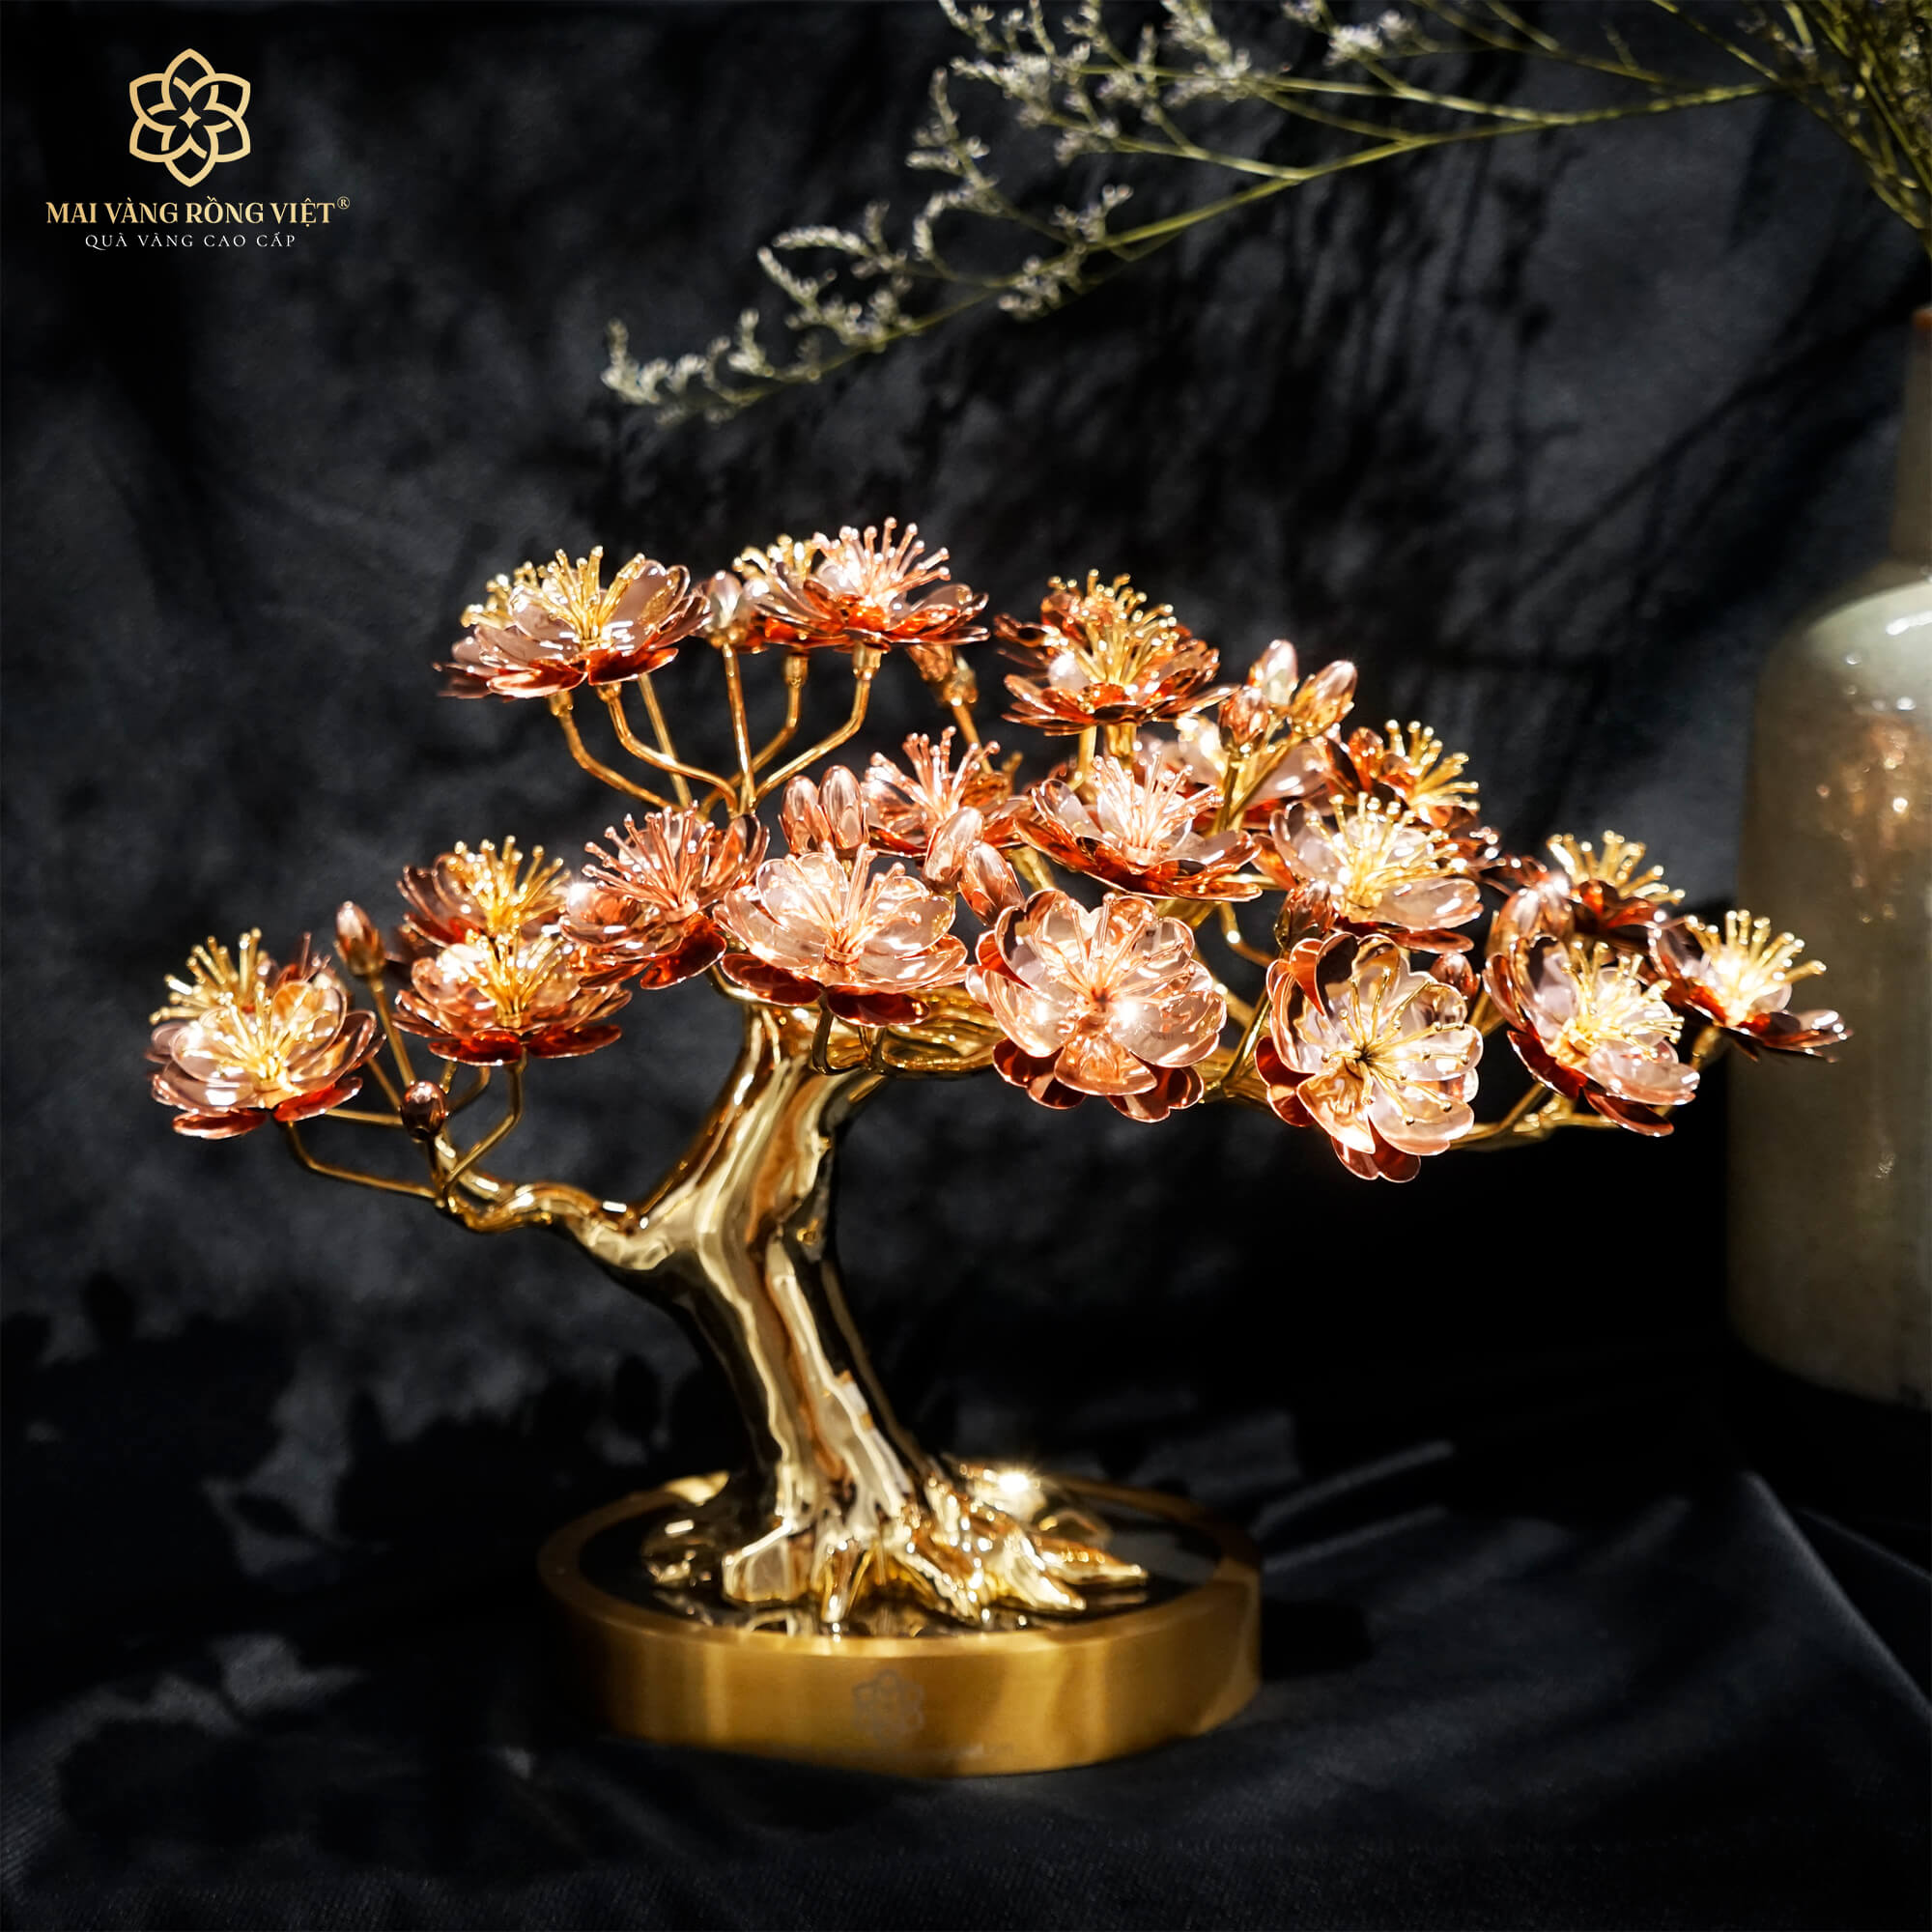 Cây Hoa Đào Bạt Phong mạ vàng 24K cao 22cm - màu Gold